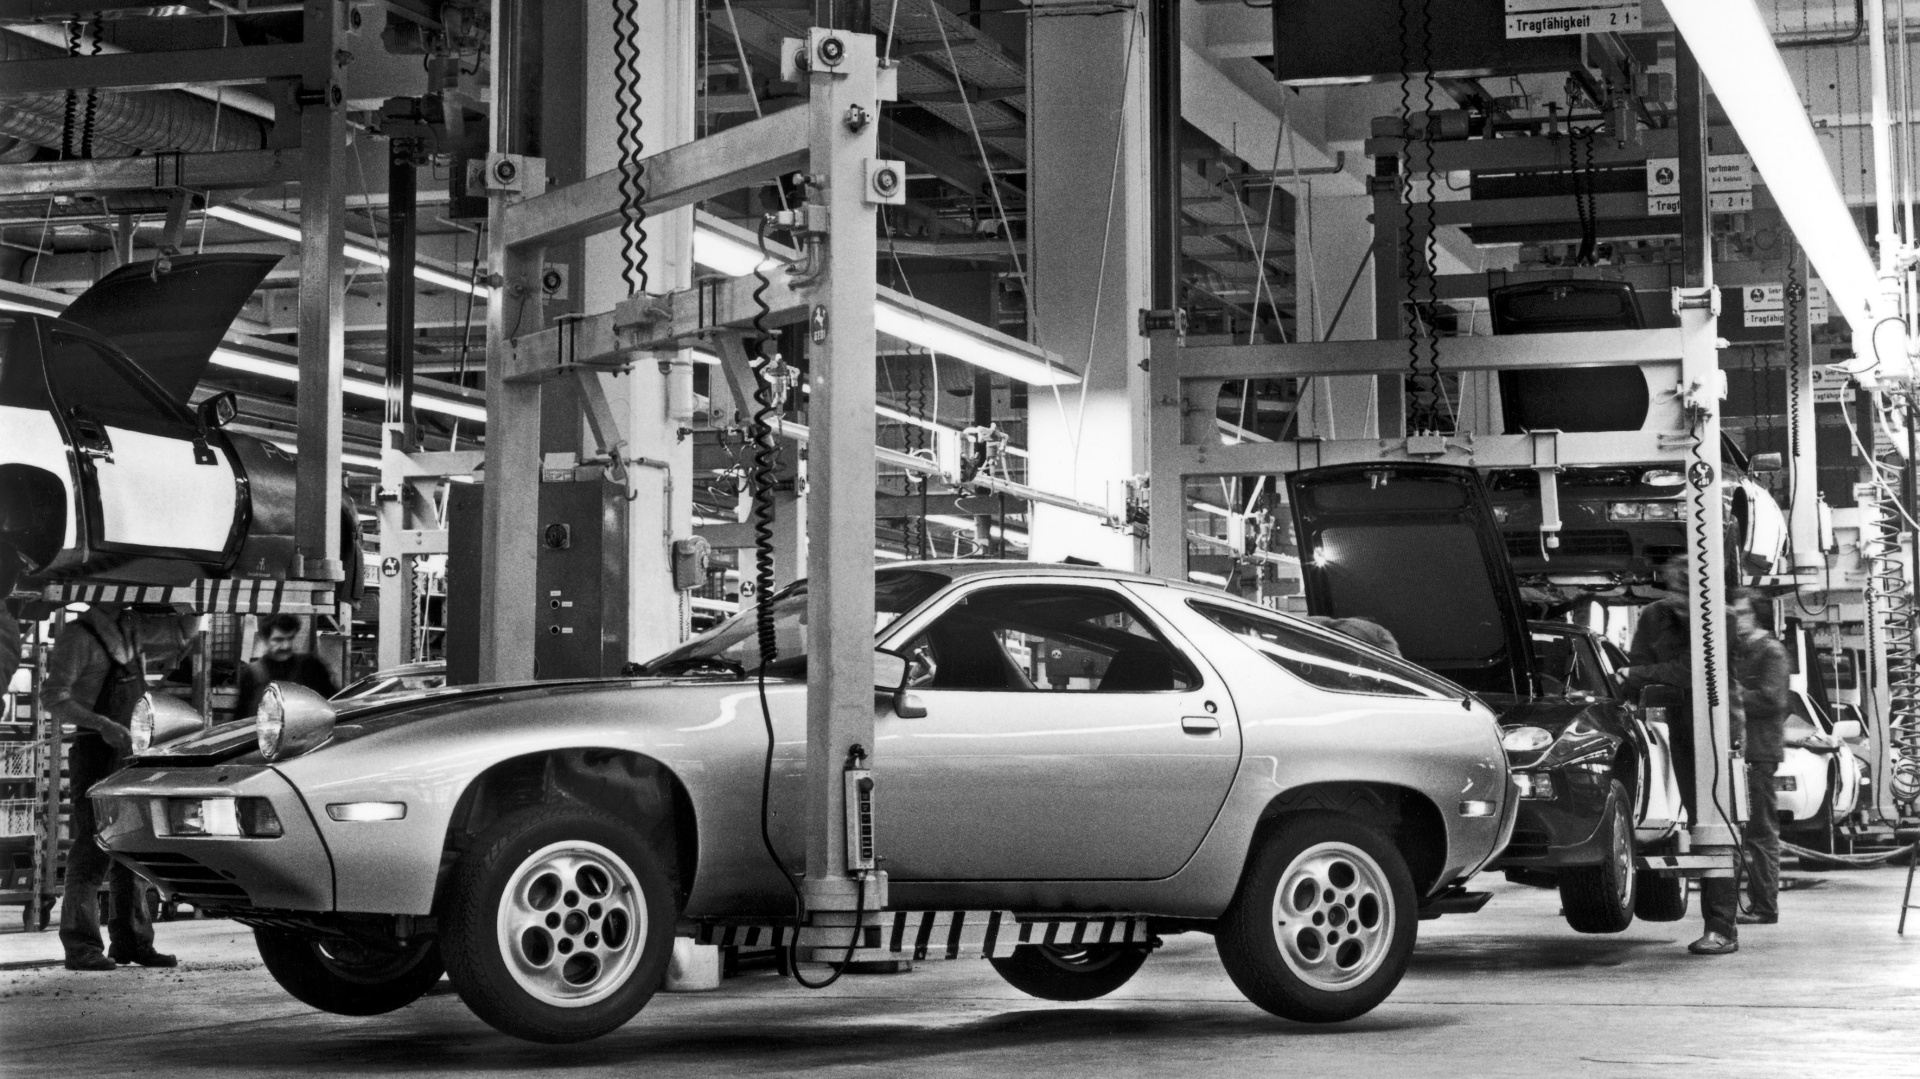 SMALL_b-Produktion Fahrzeug-Montage, 1980; Annerkannte Spitzenleistung im Automobilbau_ Der 1978 auf den Markt gebrachten 928 wurde in kurzer